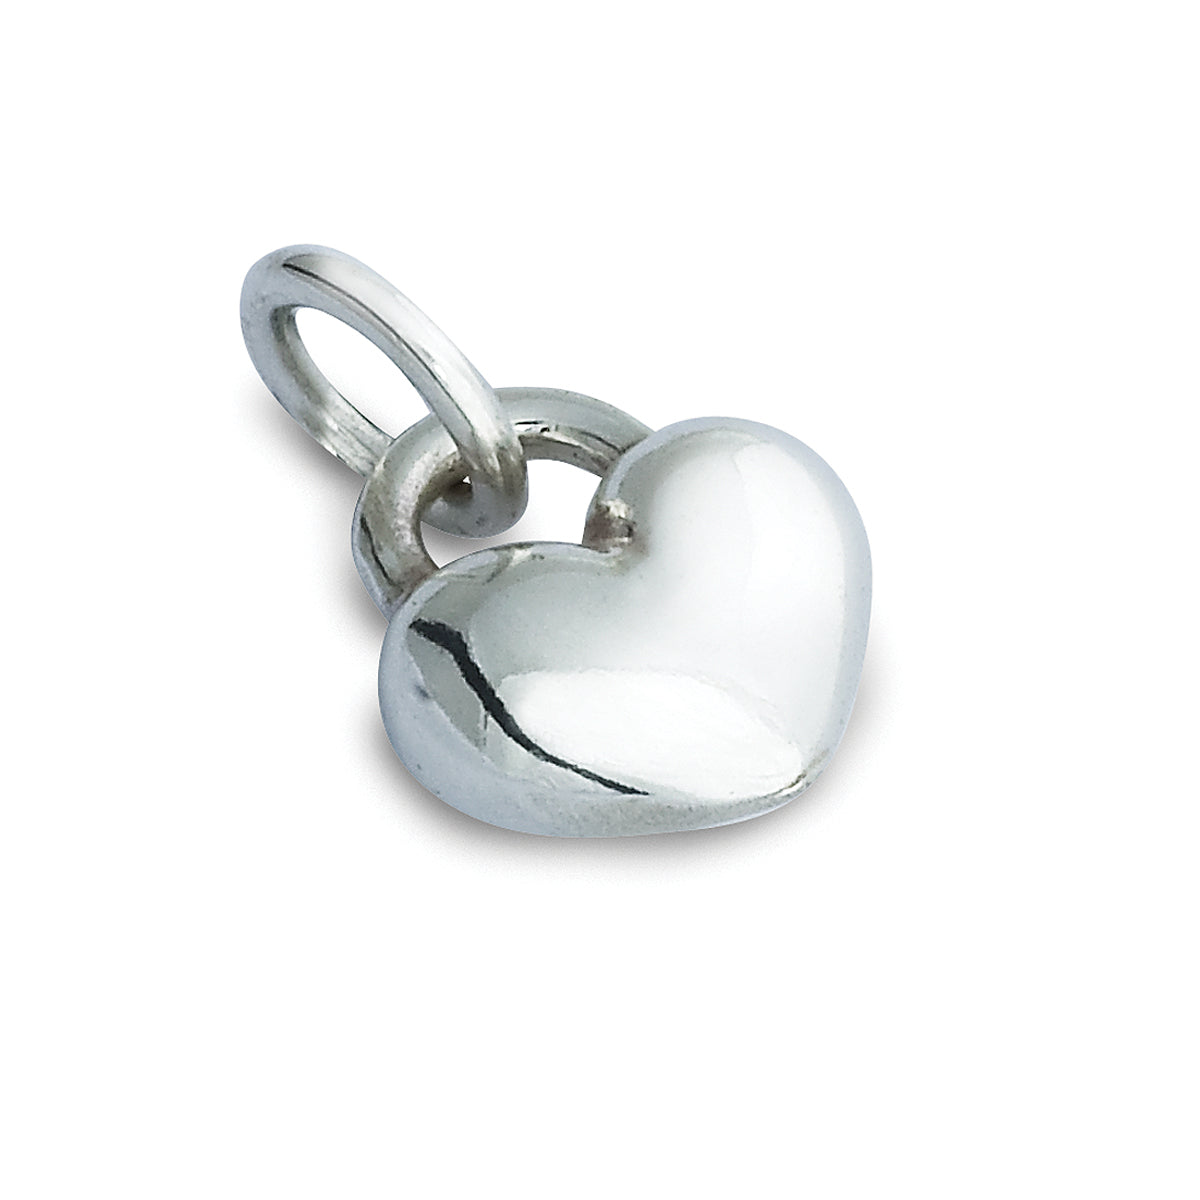 Solid silver love heart bracelet charm romantic gift scarlett jewellery